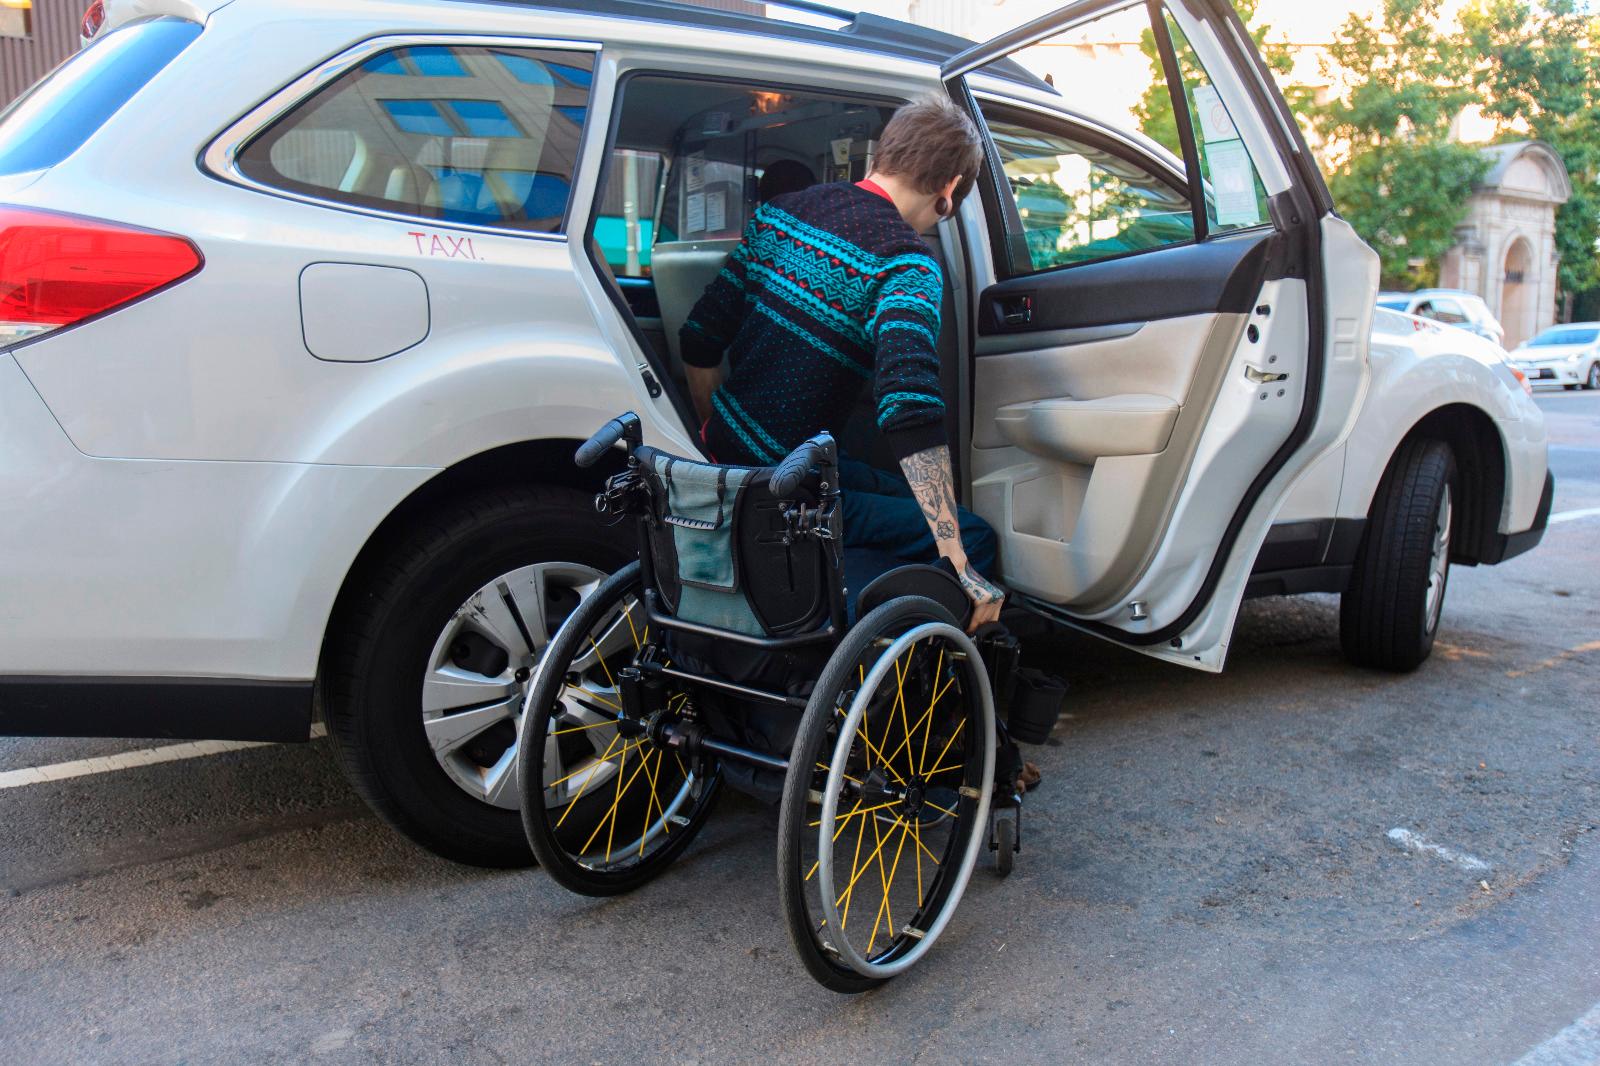 Transport de personne à mobilité réduite